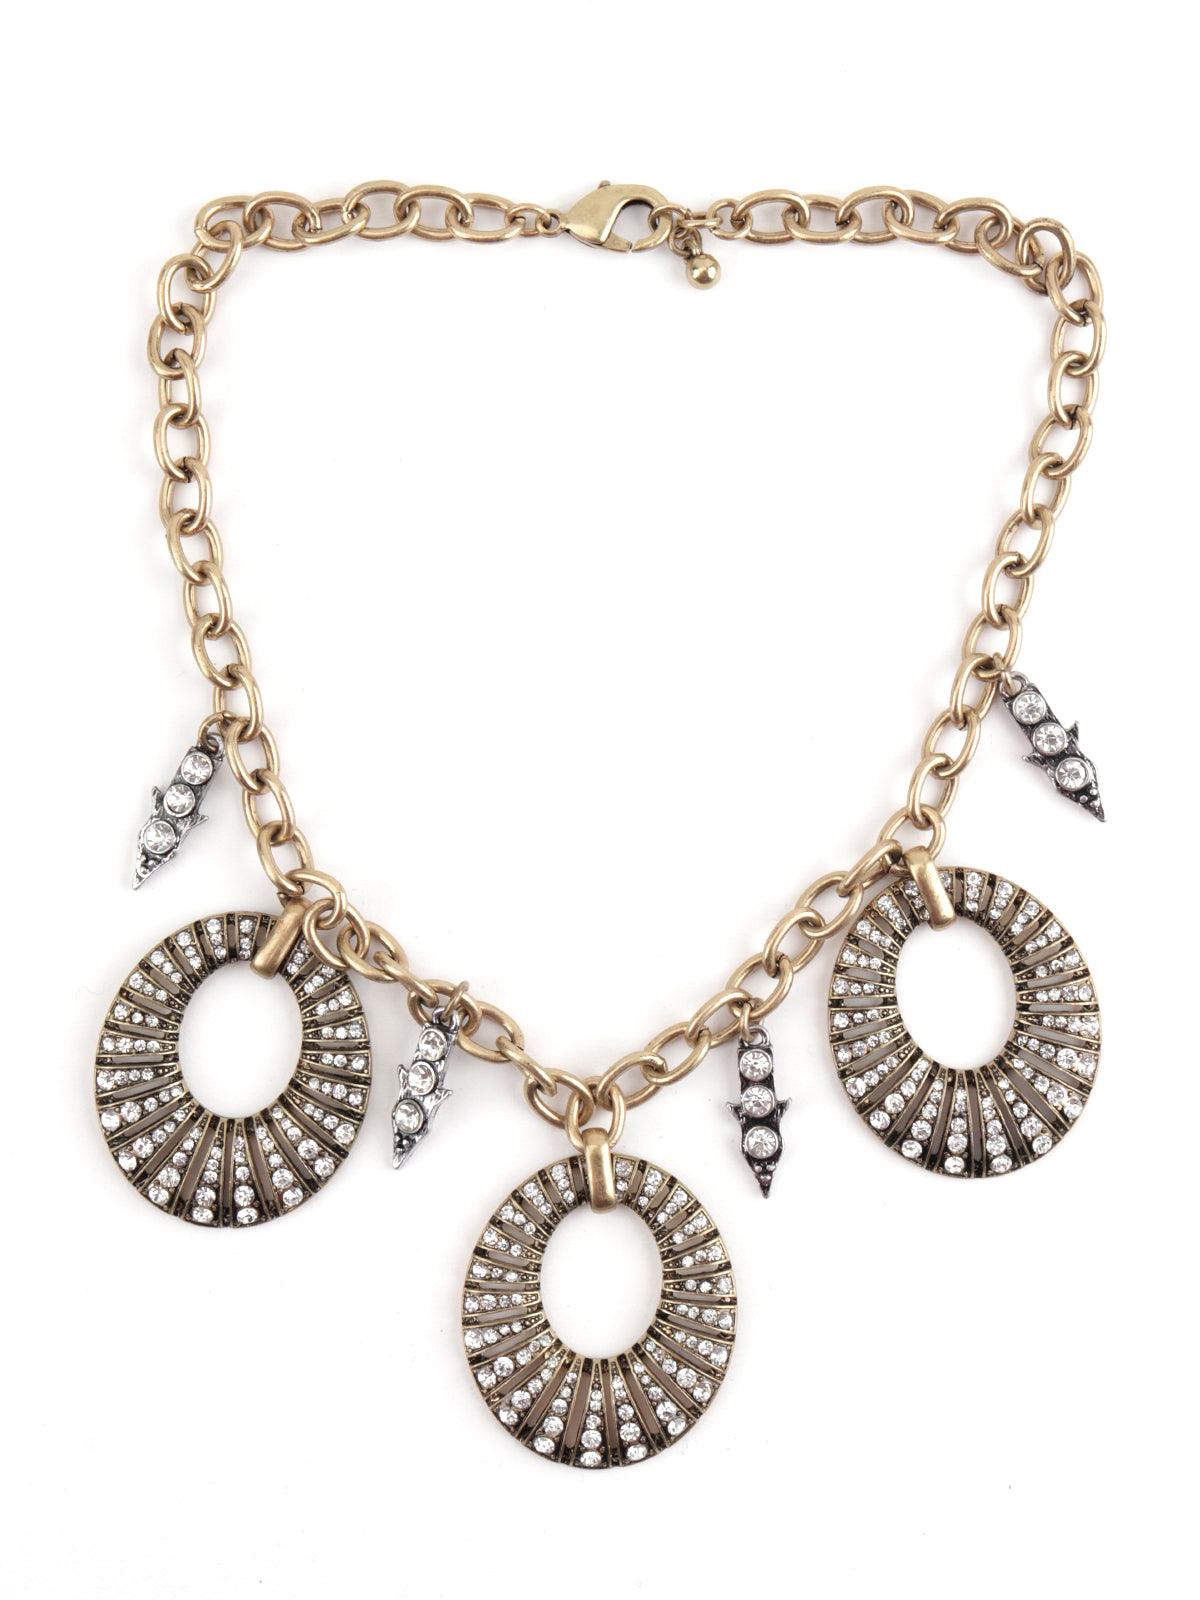 www.Nuroco.com - Vintage Silver/Gold/Black Choker Statement Necklace Women  Bijoux Rope Chain